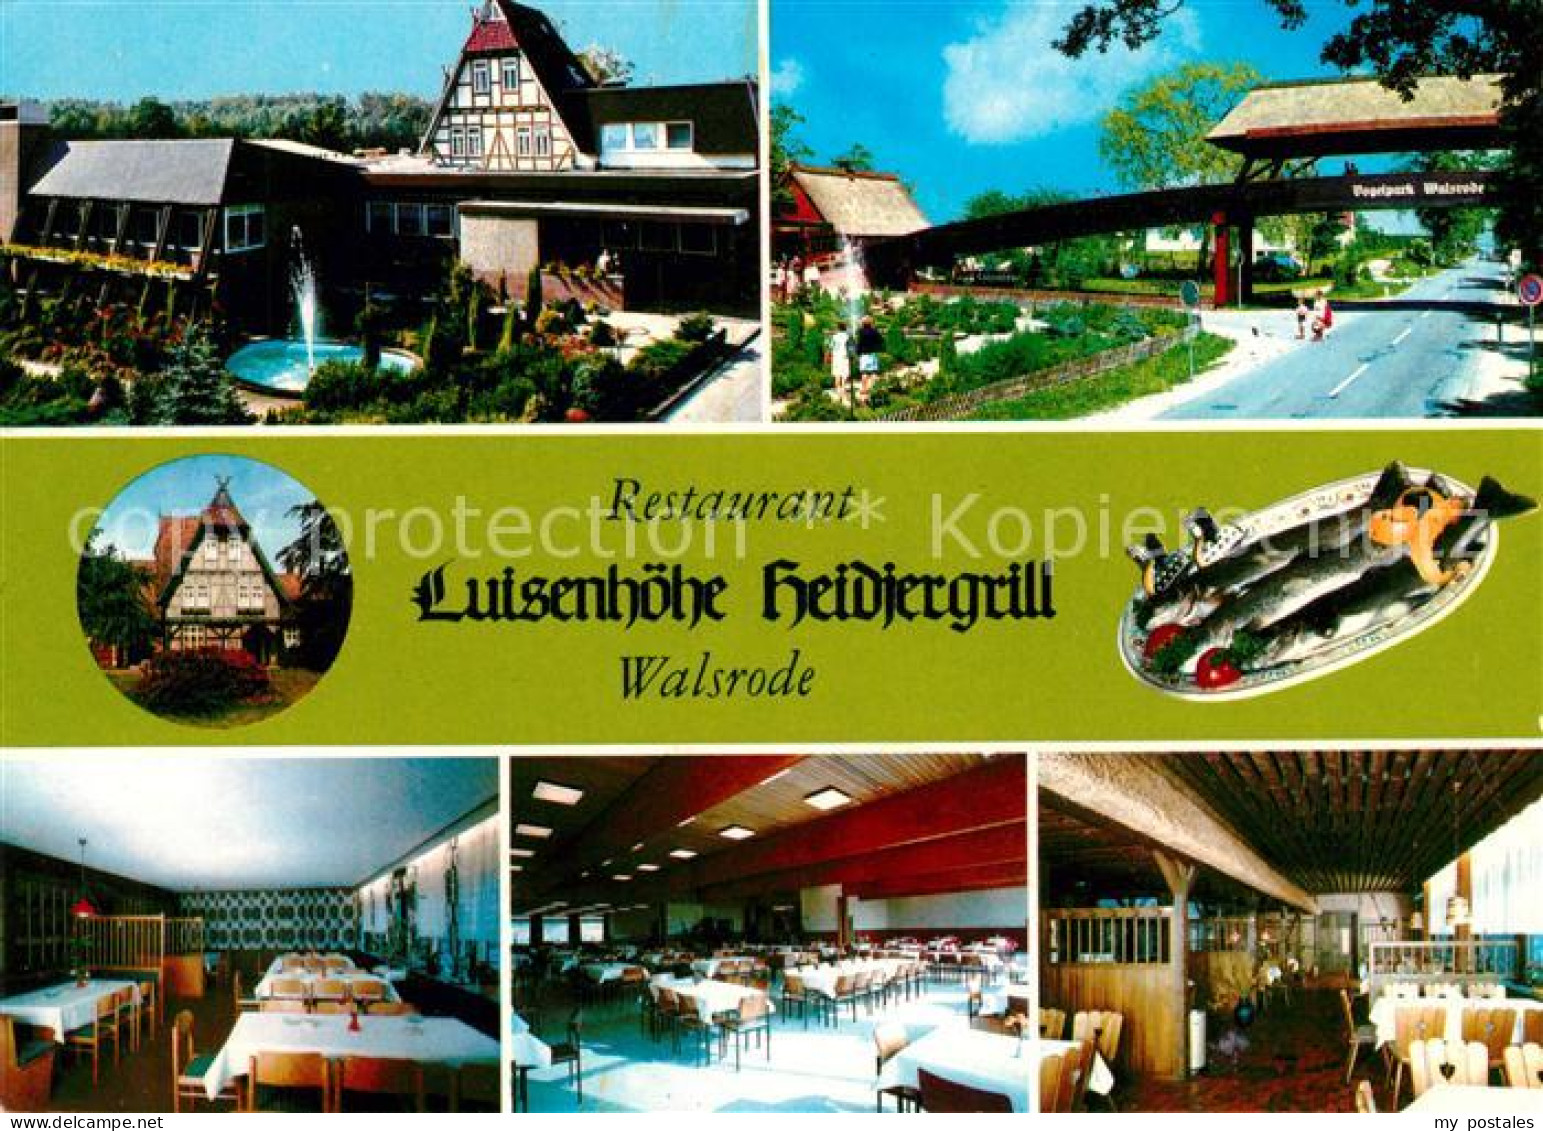 73110296 Walsrode Lueneburger Heide Restaurant Luisenhoehe Heidiergrill Walsrode - Walsrode